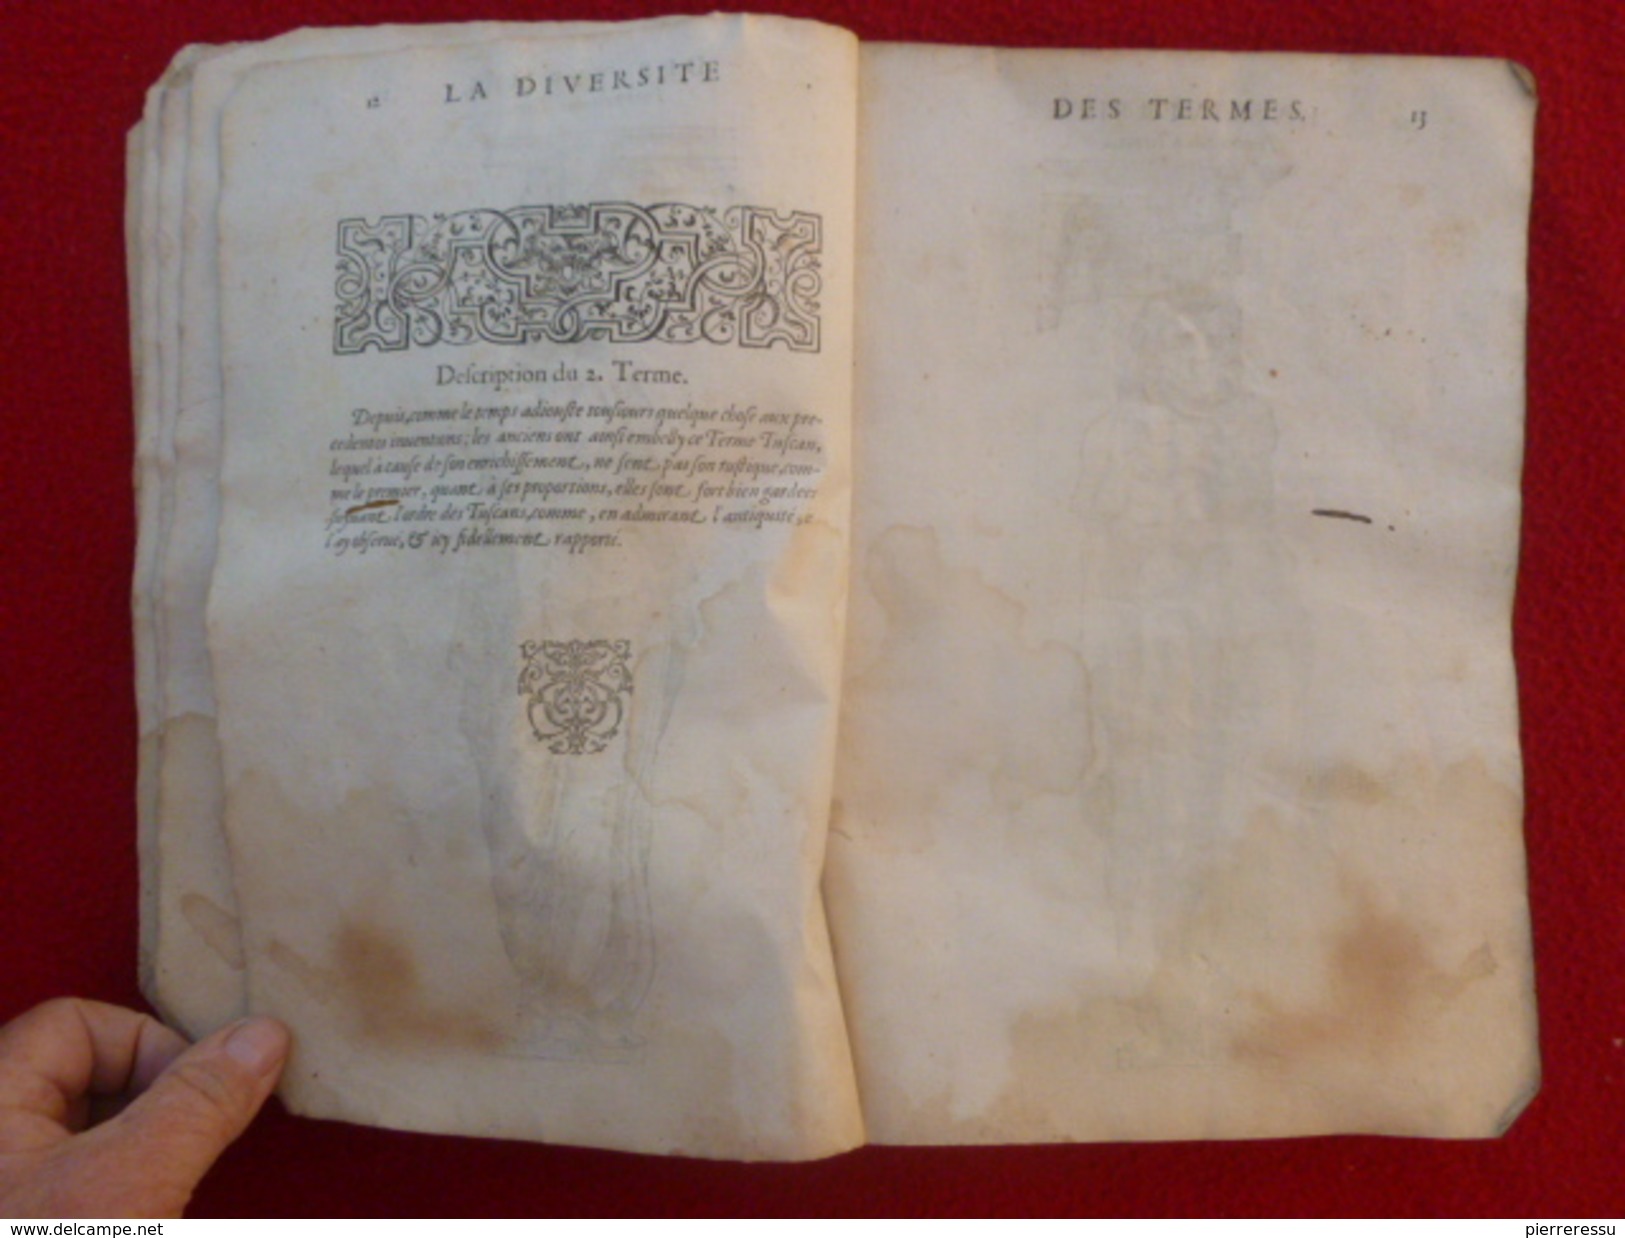 LIVRE JEAN MARCORELLE 1572 HUGUES SAMBIN ARCHITECTE LA DIVERSITE DES TERMES AU SEIGNEUR ELEONOR CHABOT - Jusque 1700